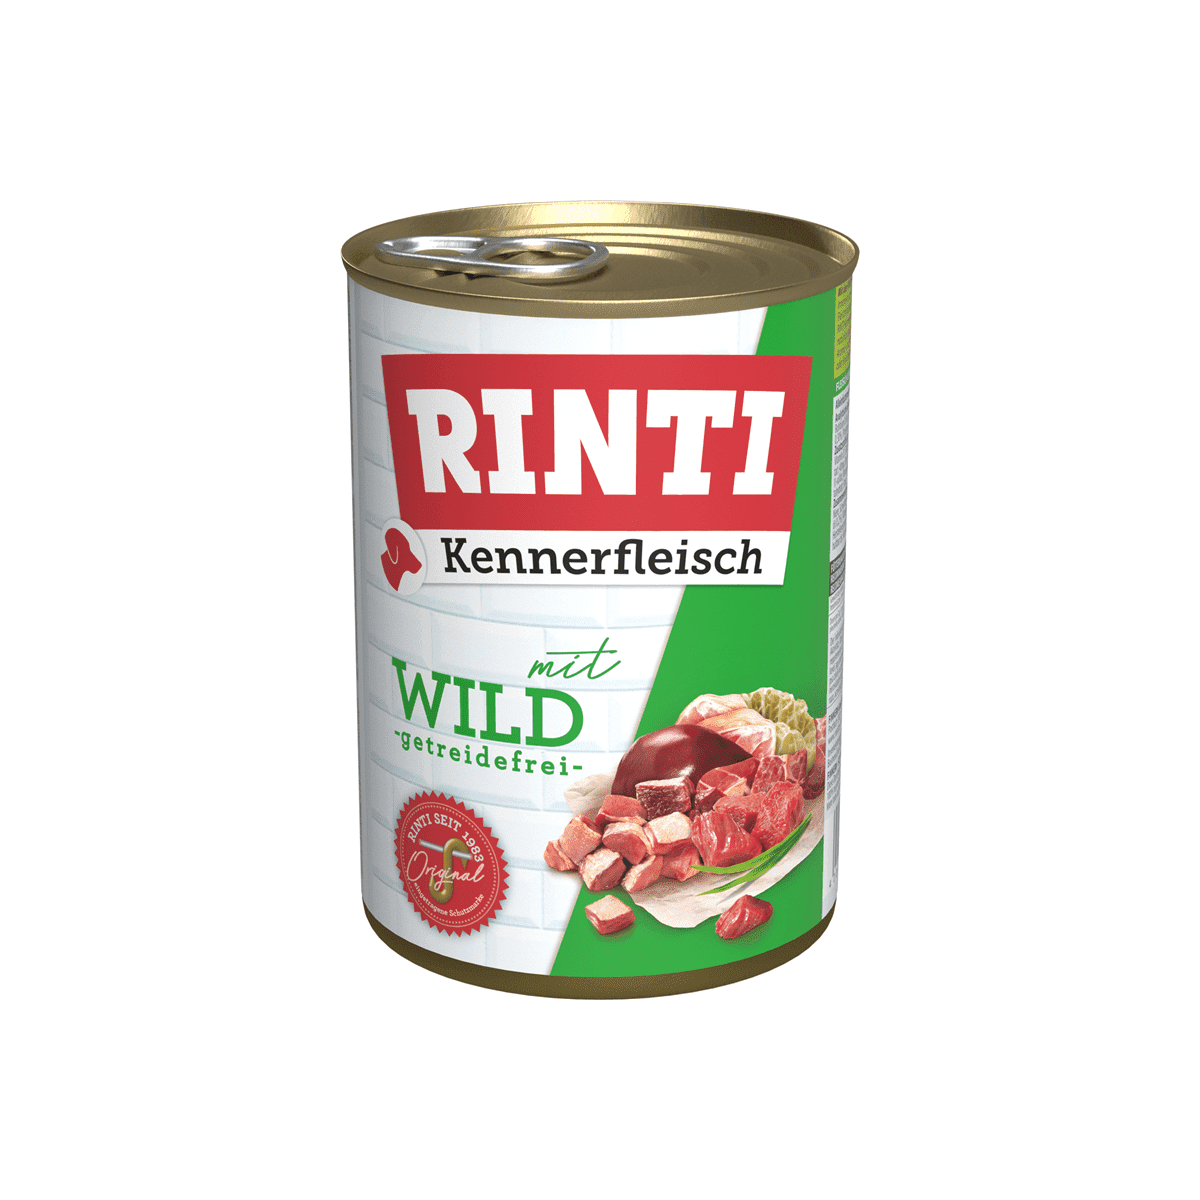 Rinti Kennerfleisch Wild - zoo.de